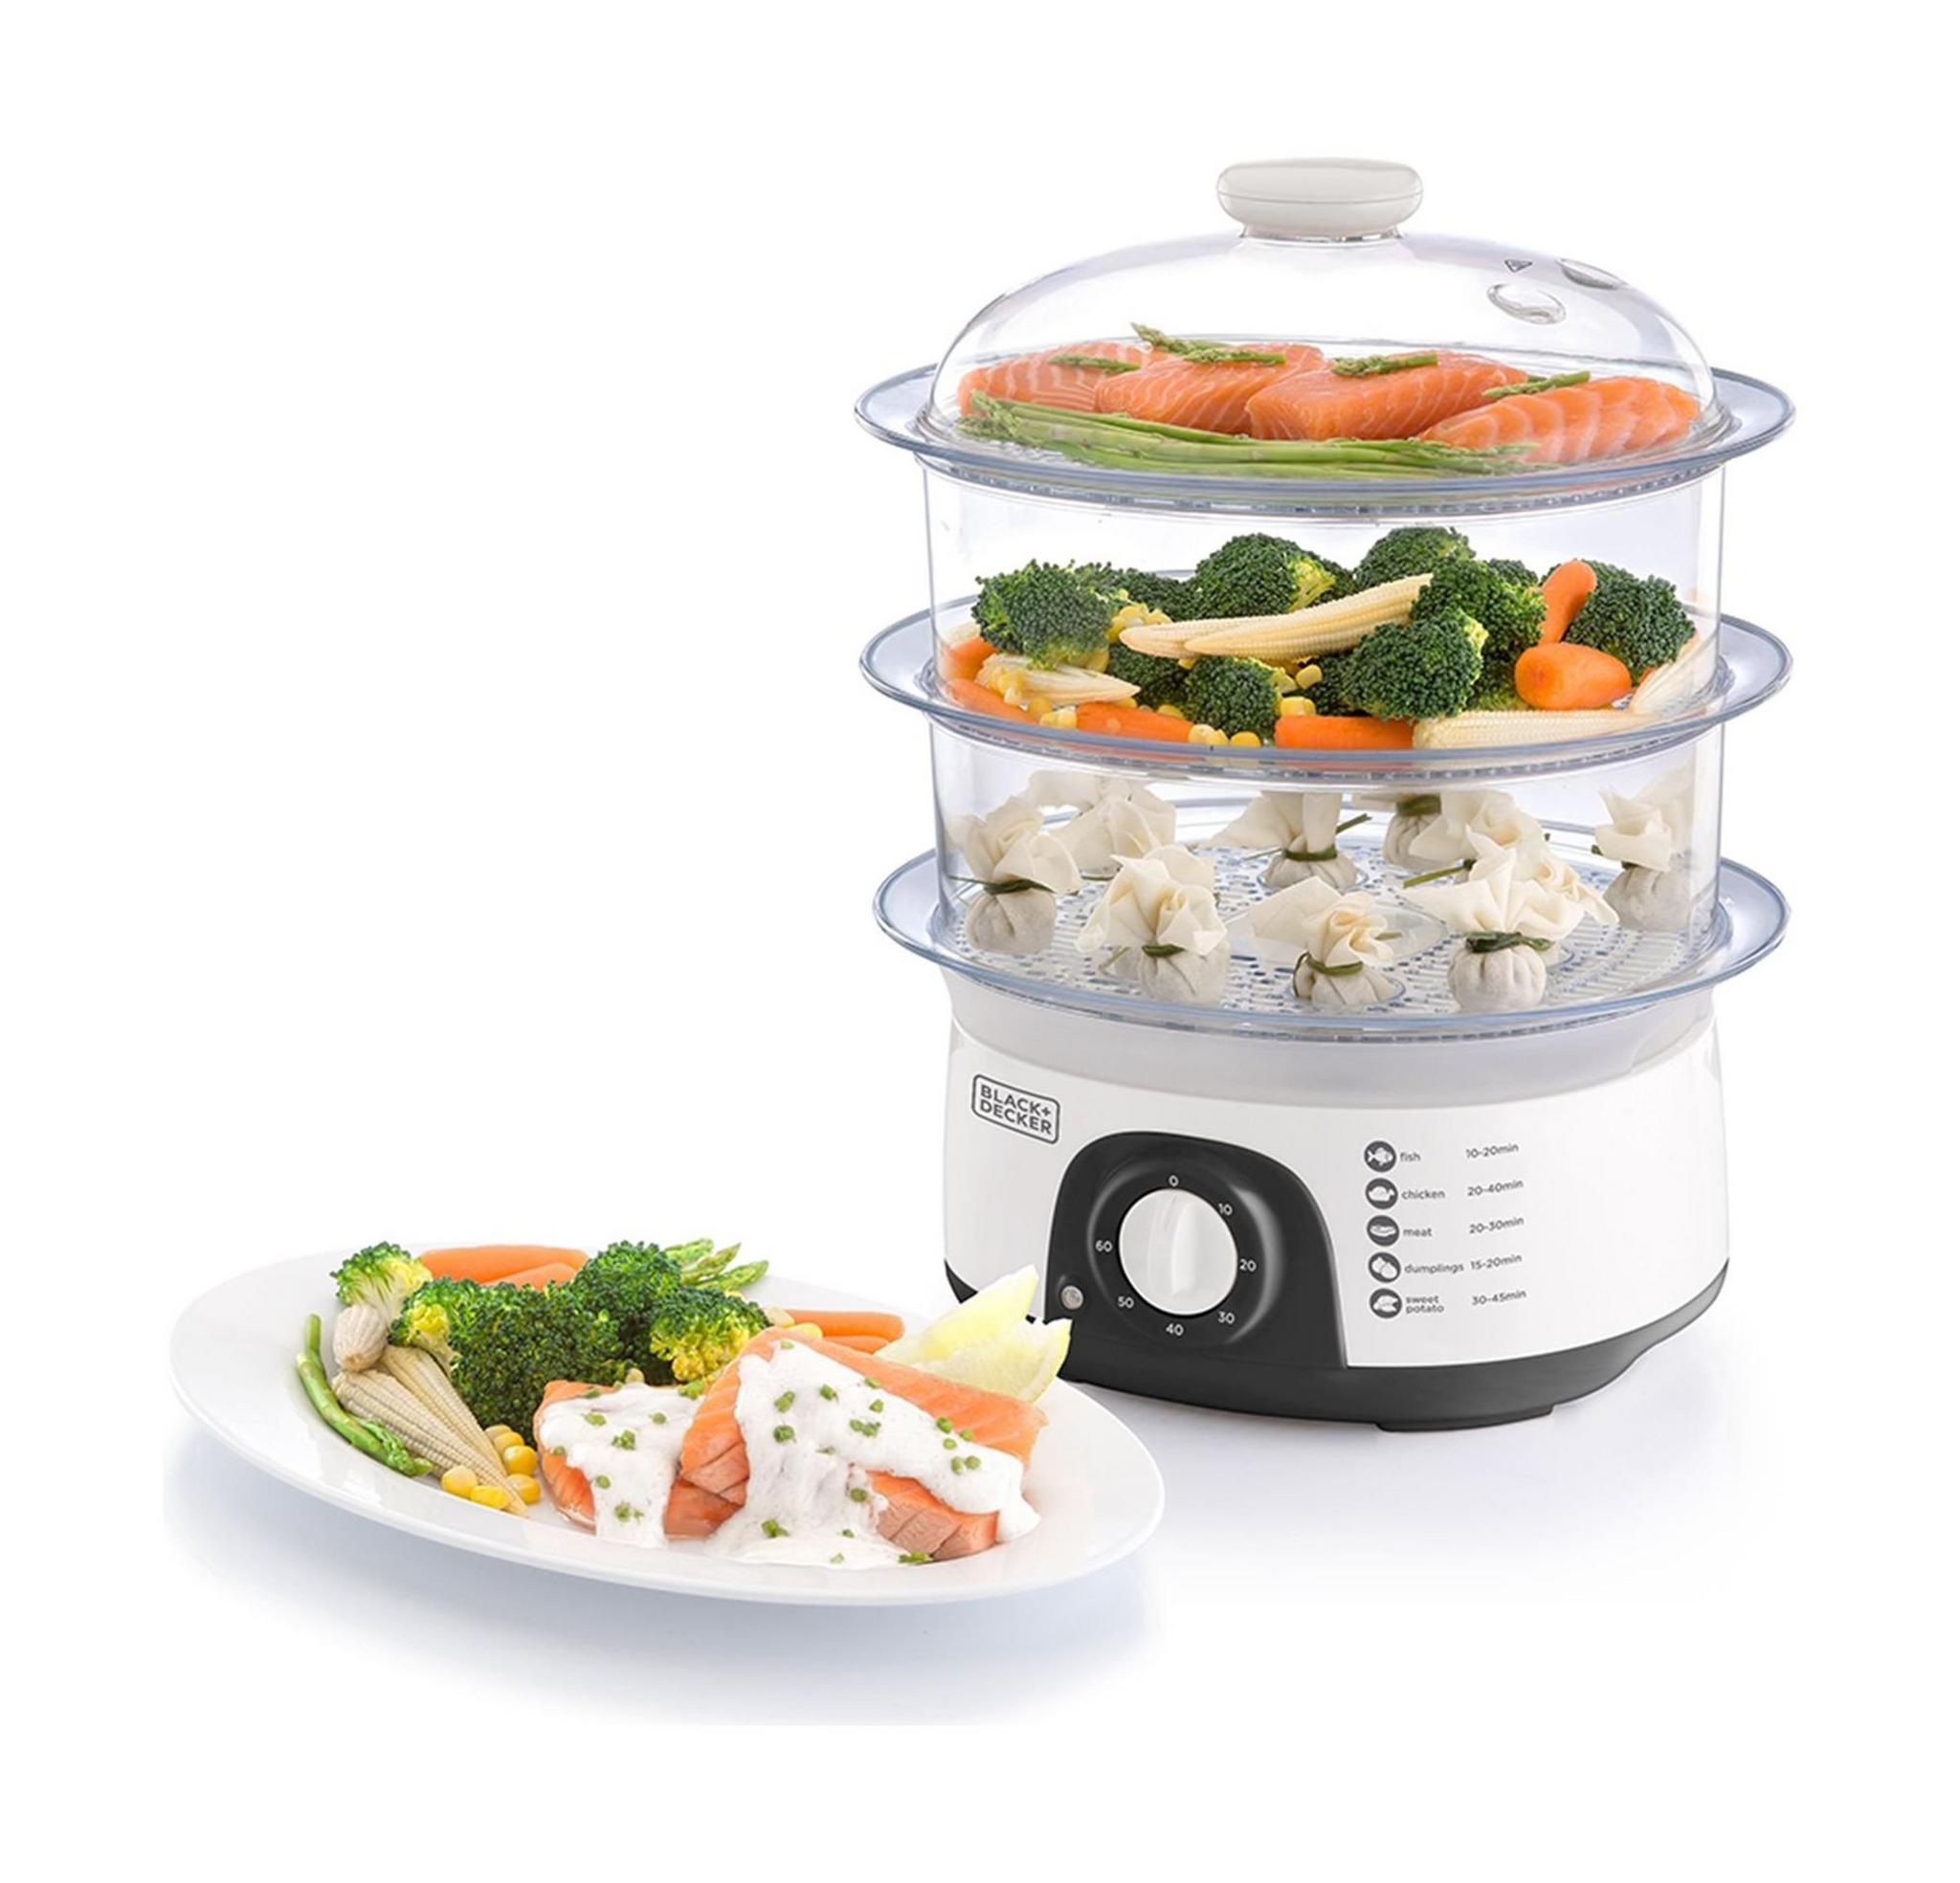 جهاز طهي الطعام بالبخار ٣ طوابق بقوة ٧٧٥ واط من بلاك آند ديكر – أبيض - (HS6000)